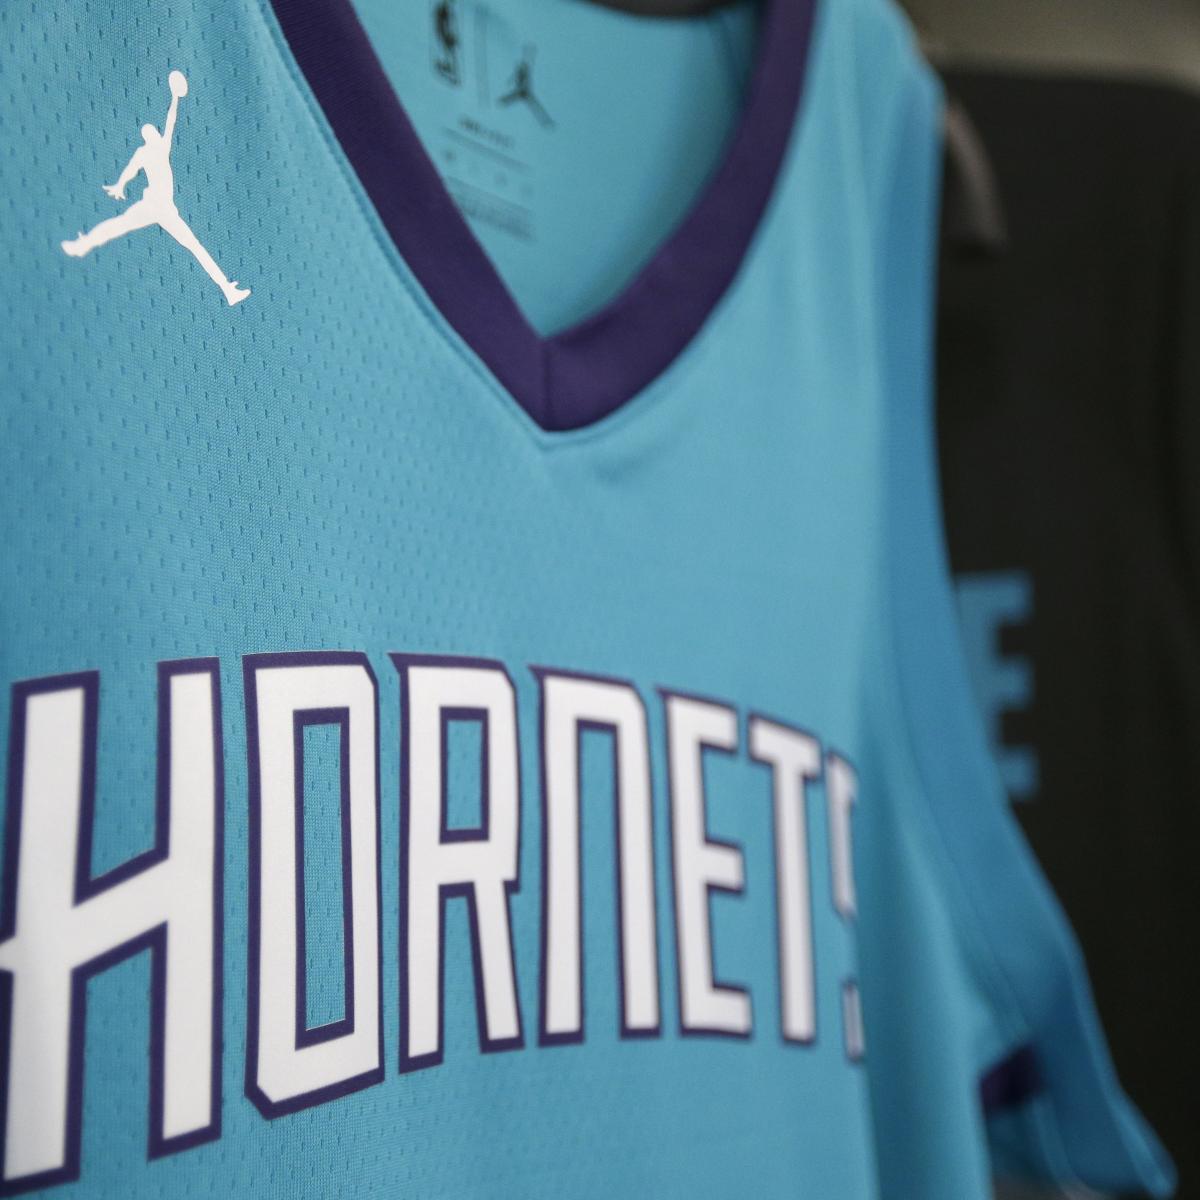 Are Nike and Jordan Logos Coming to NBA Jerseys?